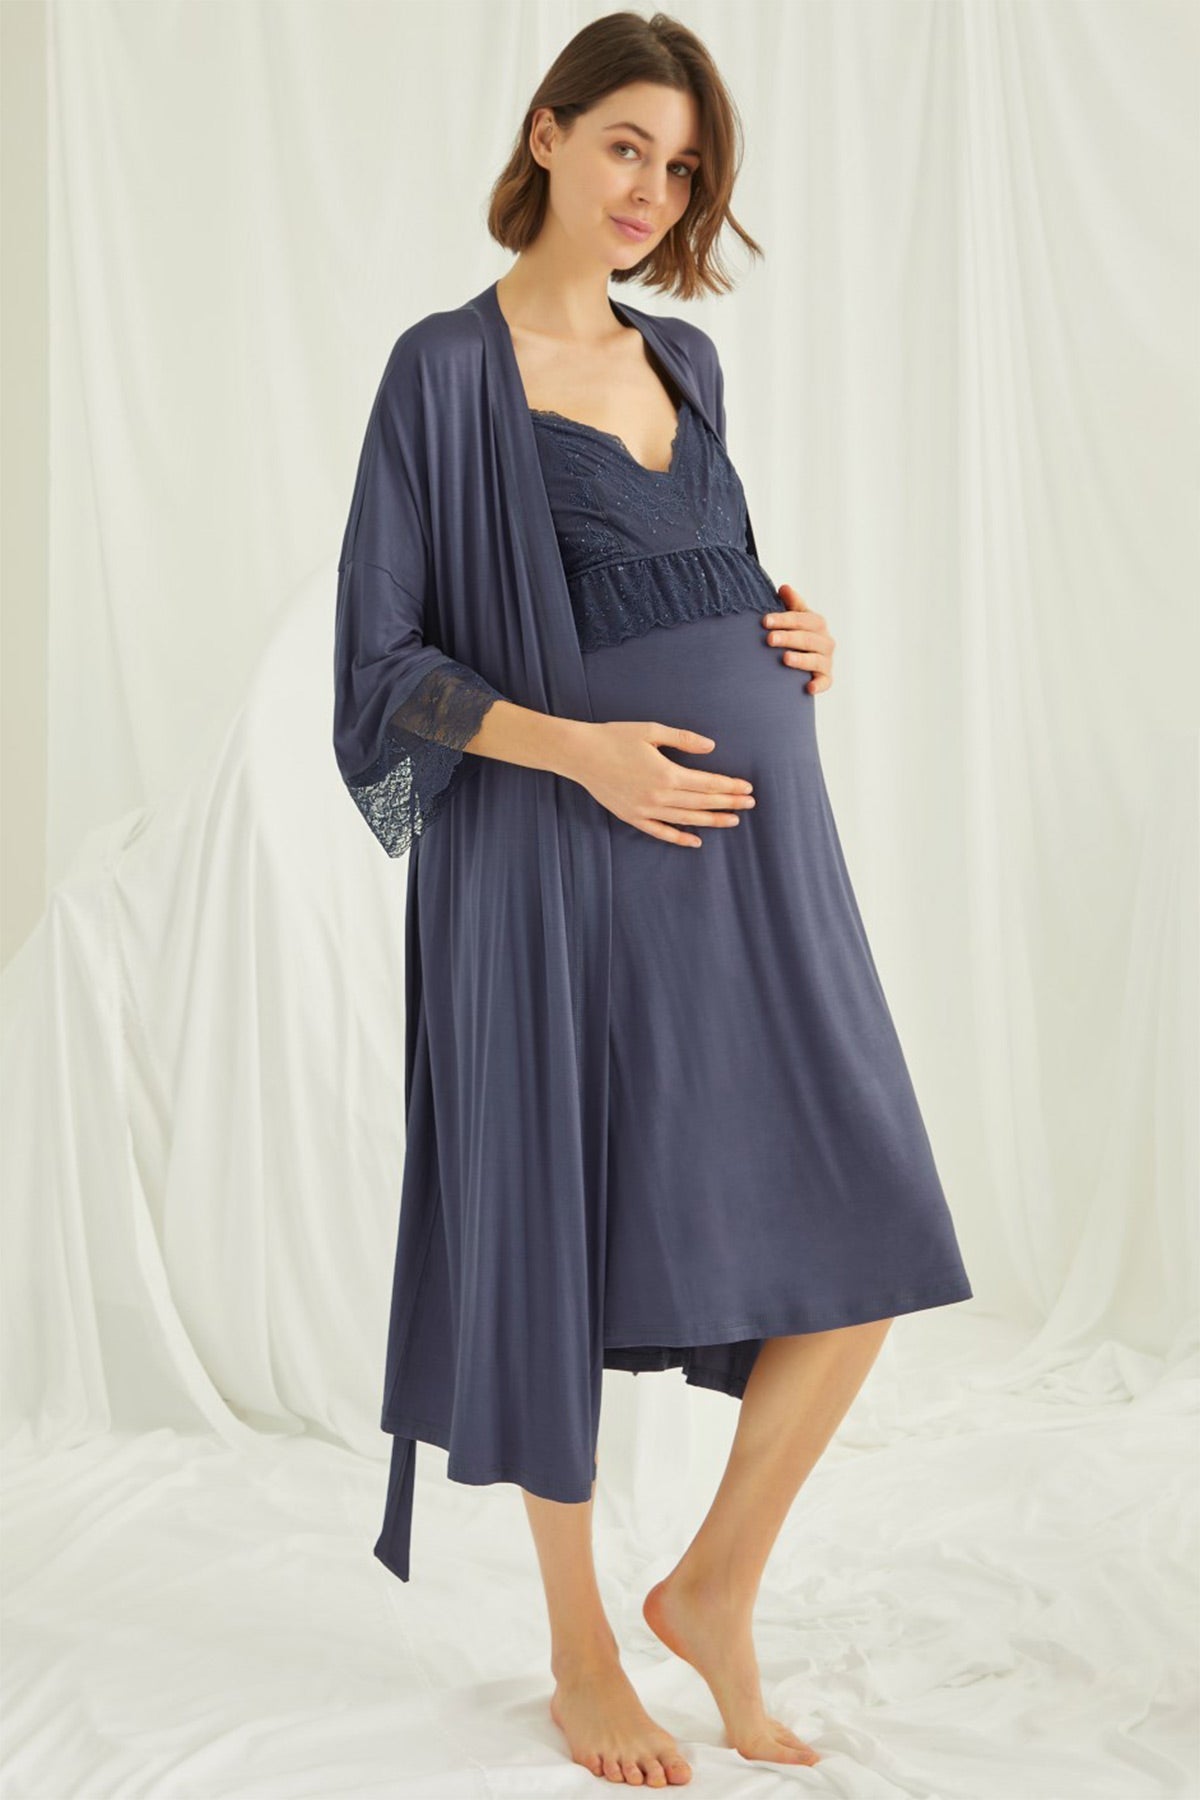 Shopymommy 13127 Strappy Maternity & Nursing Nightgown Powder